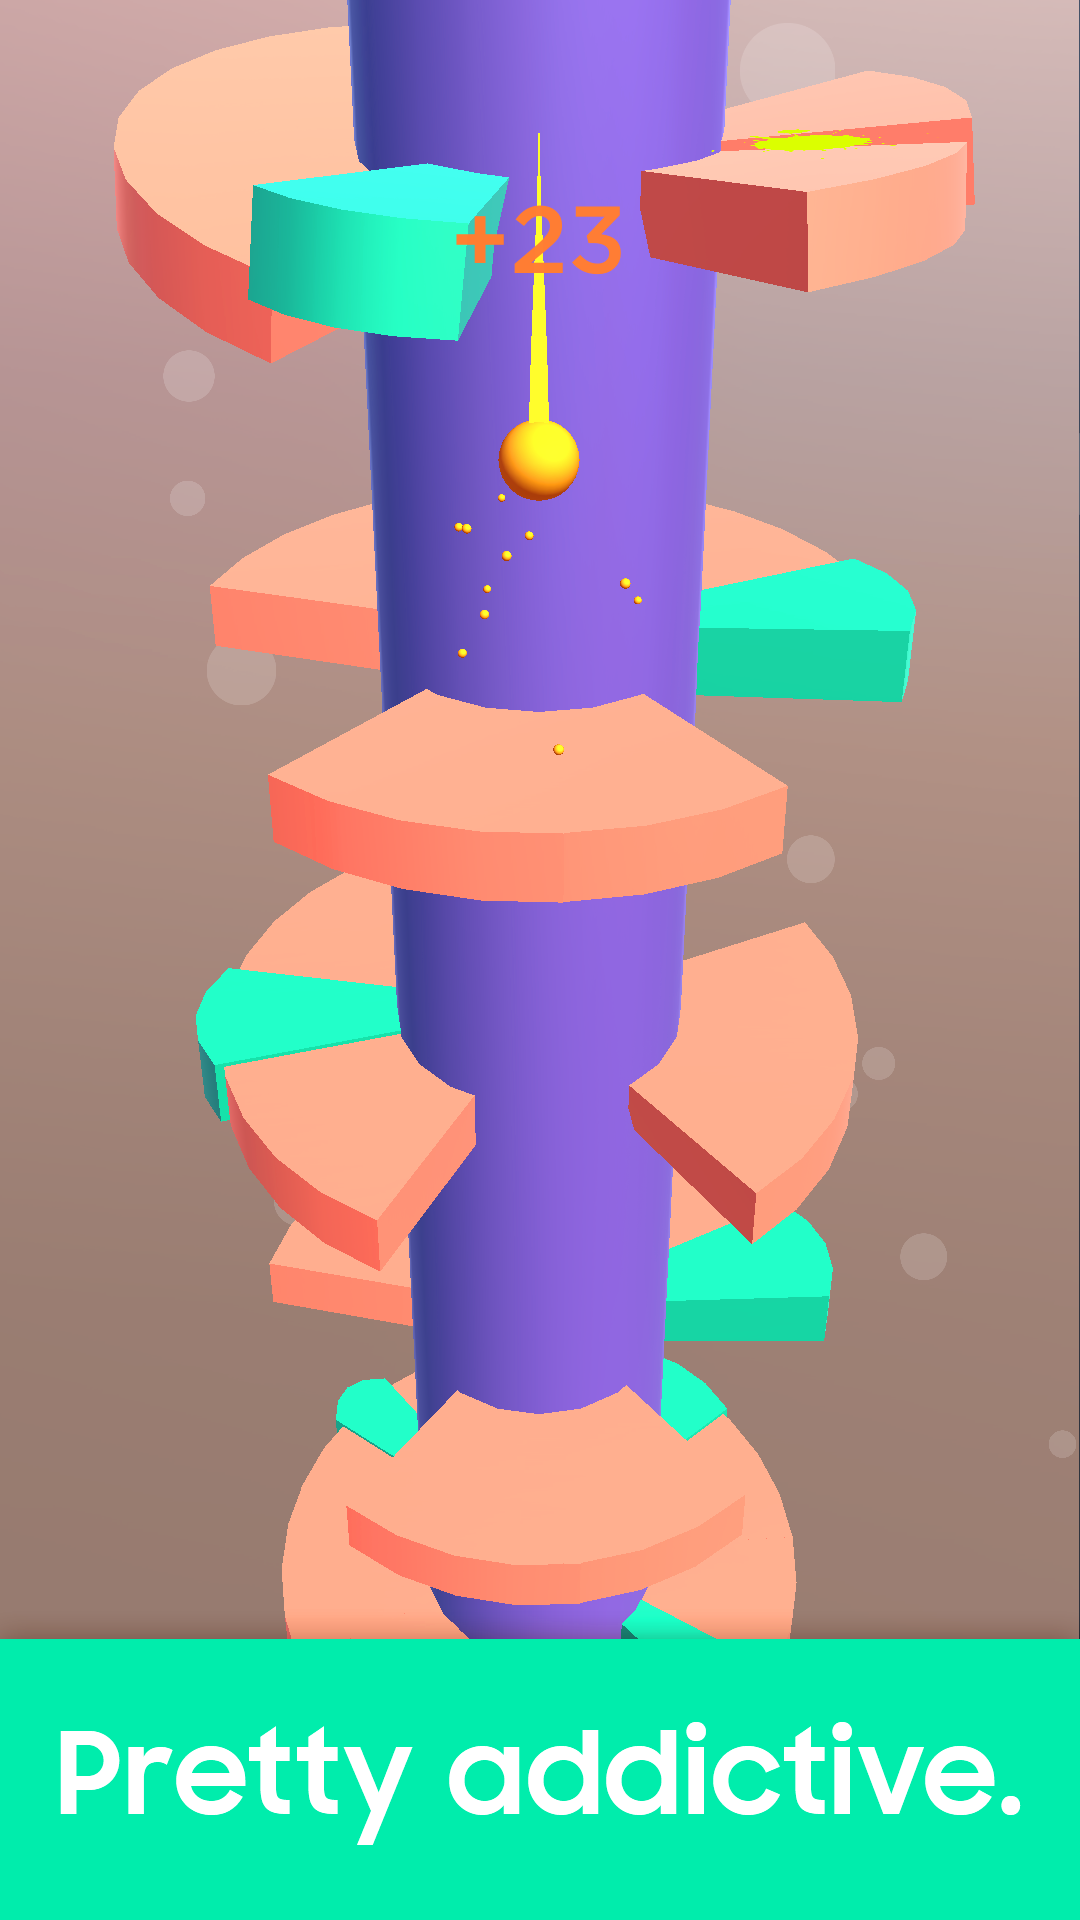 Screenshot of Helix Jump: Spiral Ball Drop Tower